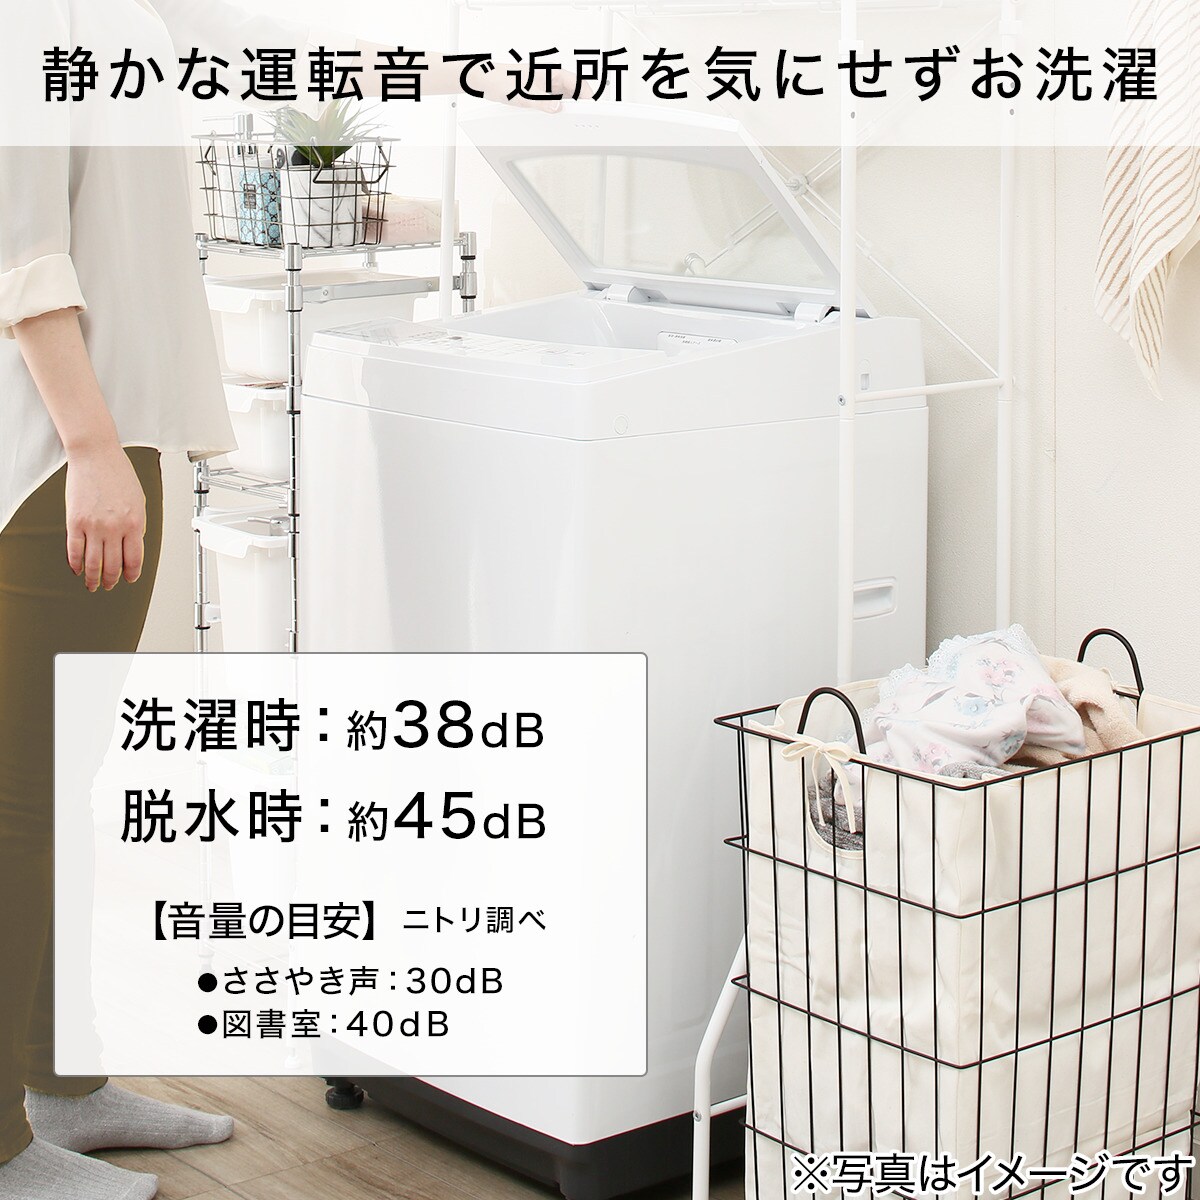 生活家電 洗濯機 6kg全自動洗濯機(NTR60 ホワイト)